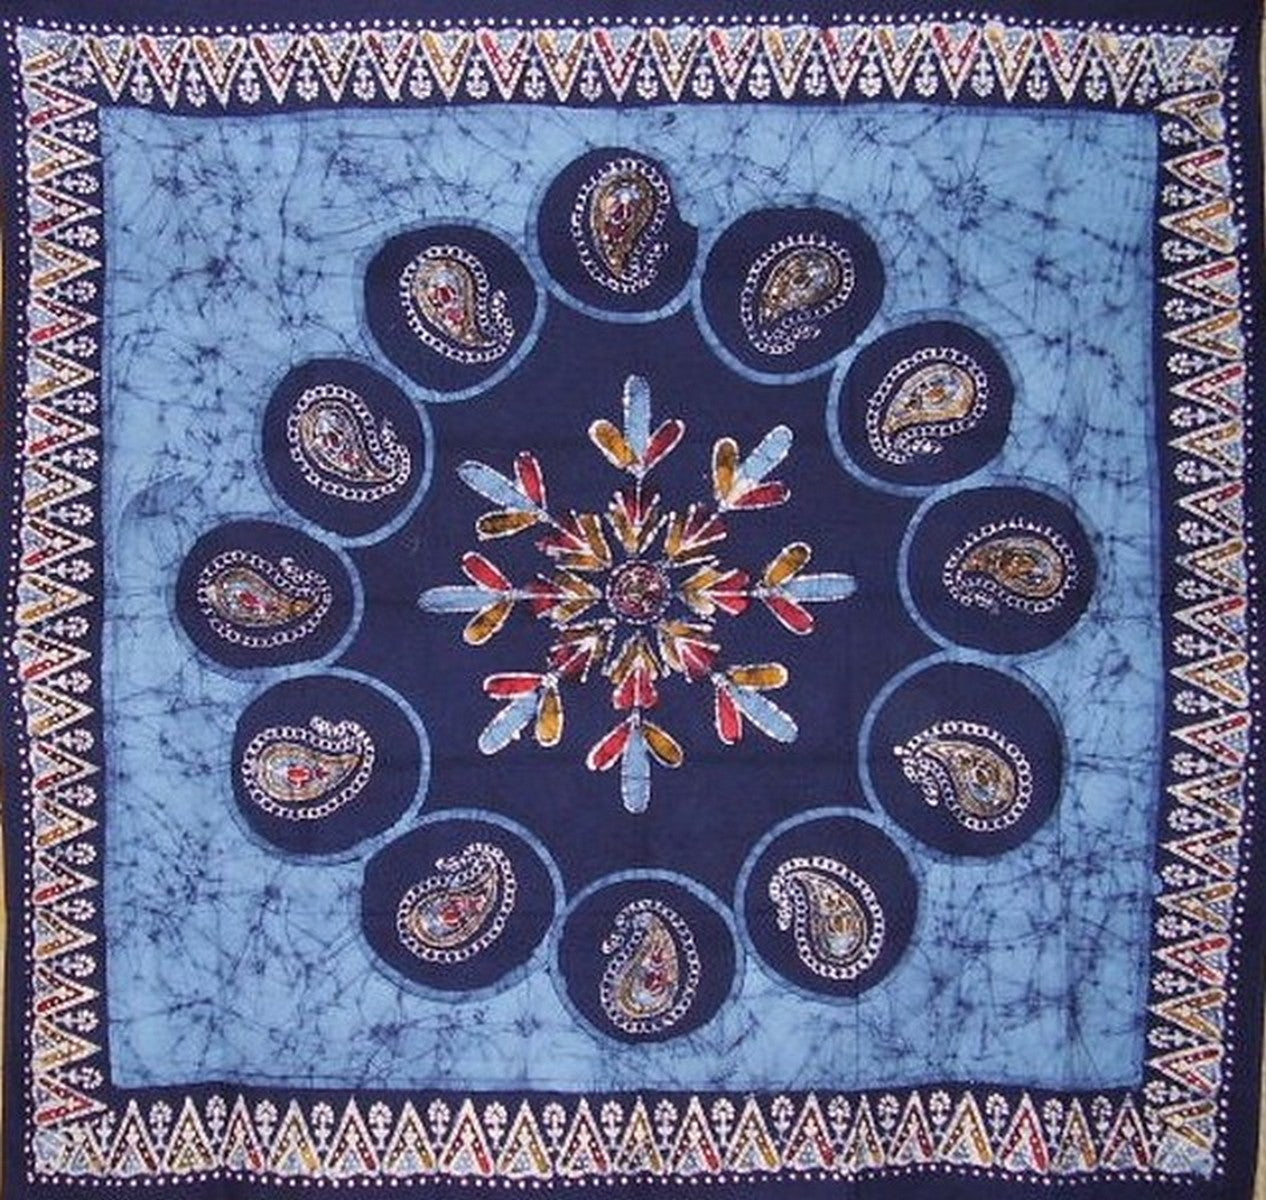 Toalha de mesa quadrada de algodão Batik 60" x 60" azul